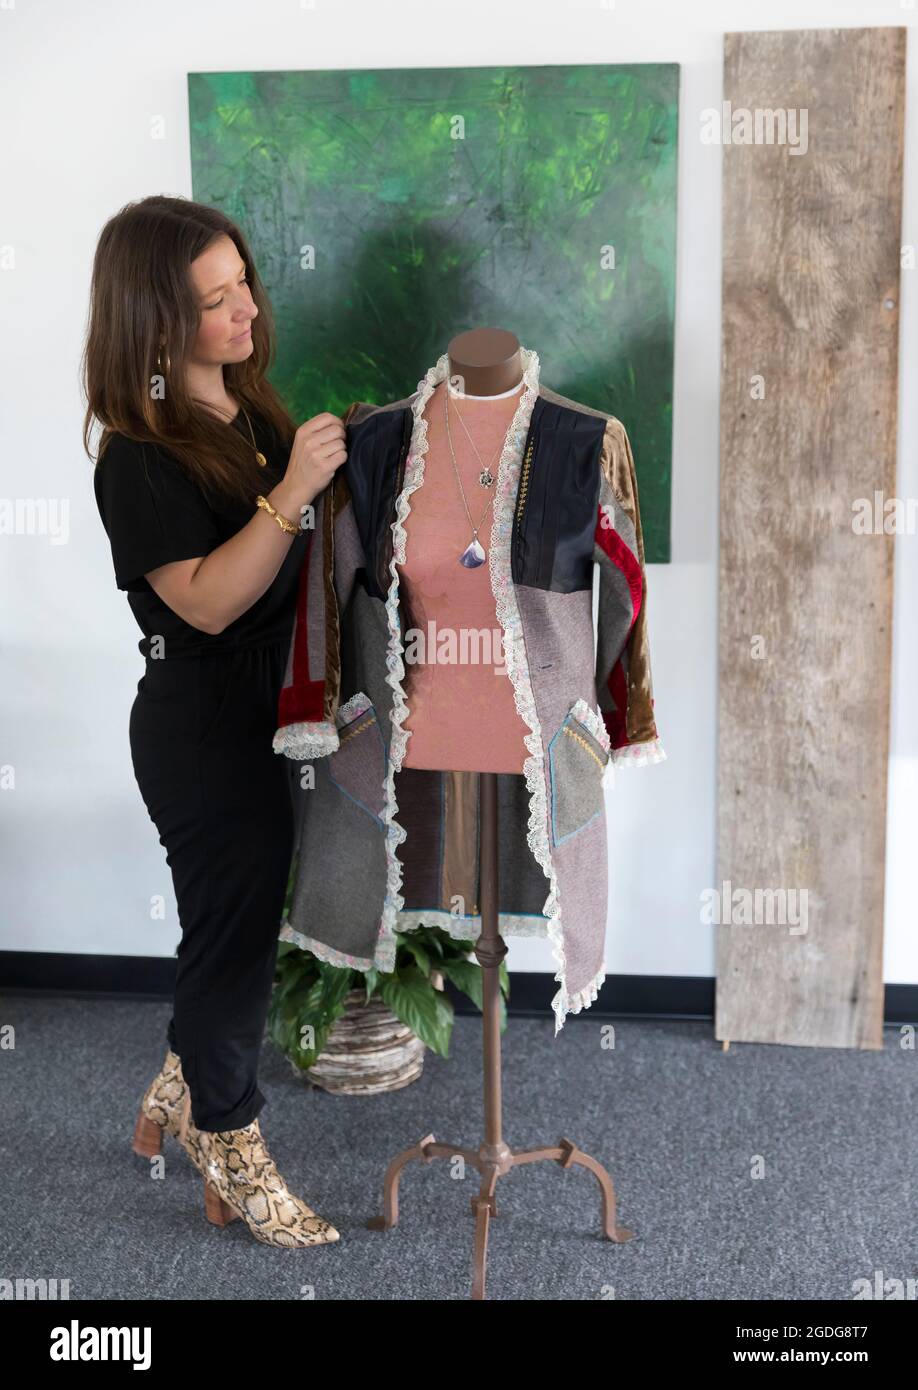 Veste style entrepreneur mode féminine dans son studio de design Banque D'Images